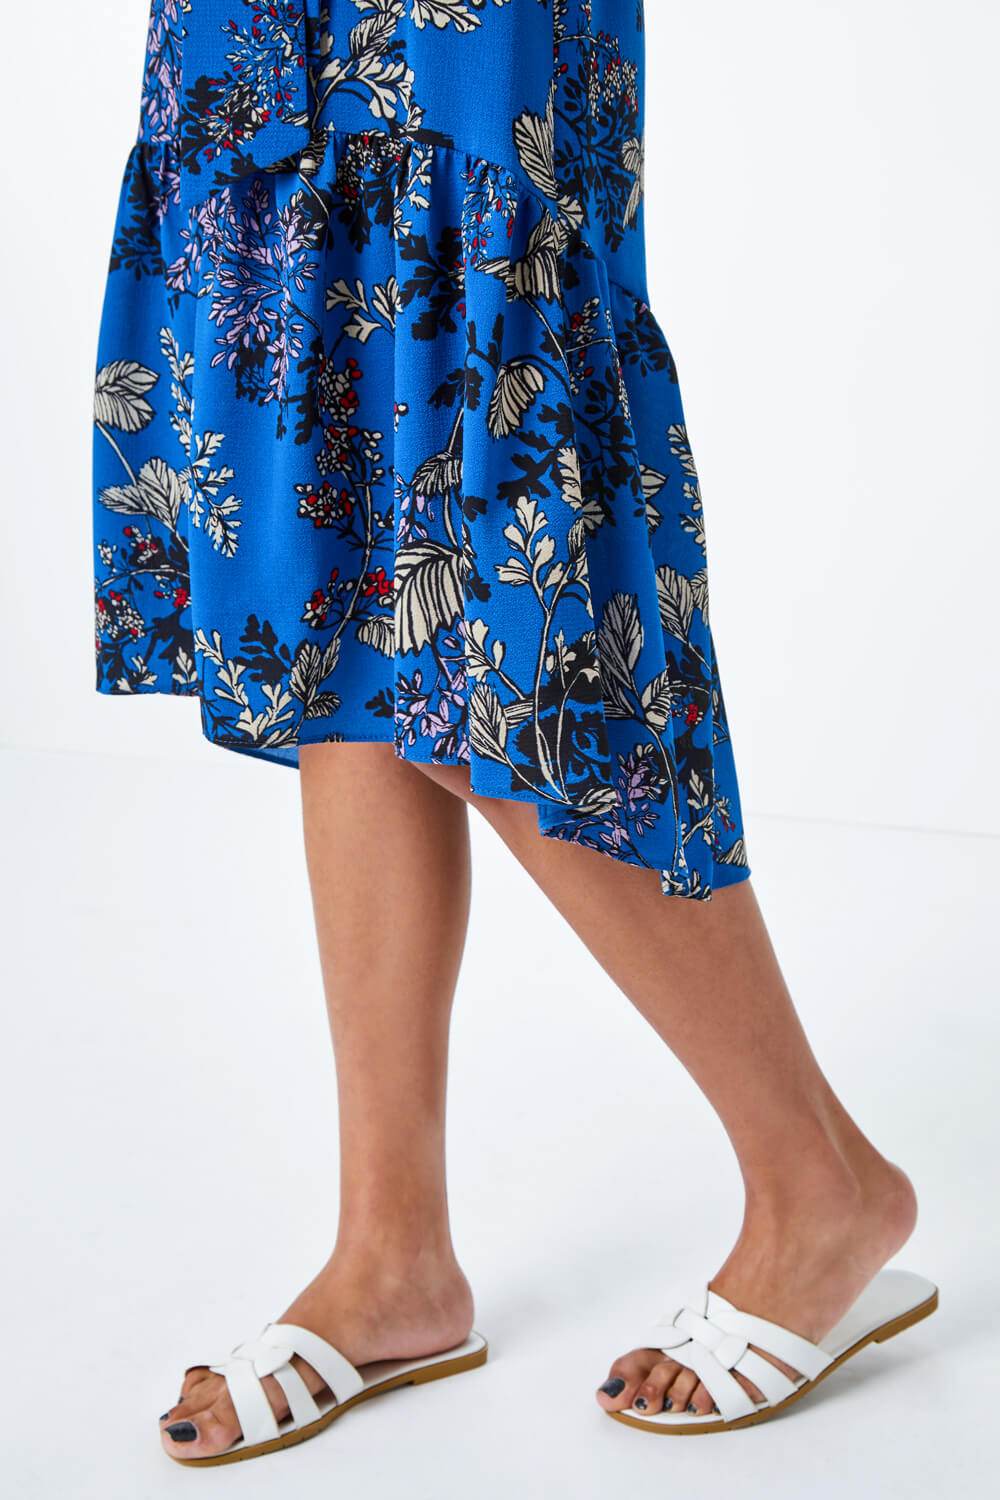 Floral Print Dipped Hem Dress in Blue - Roman Originals UK